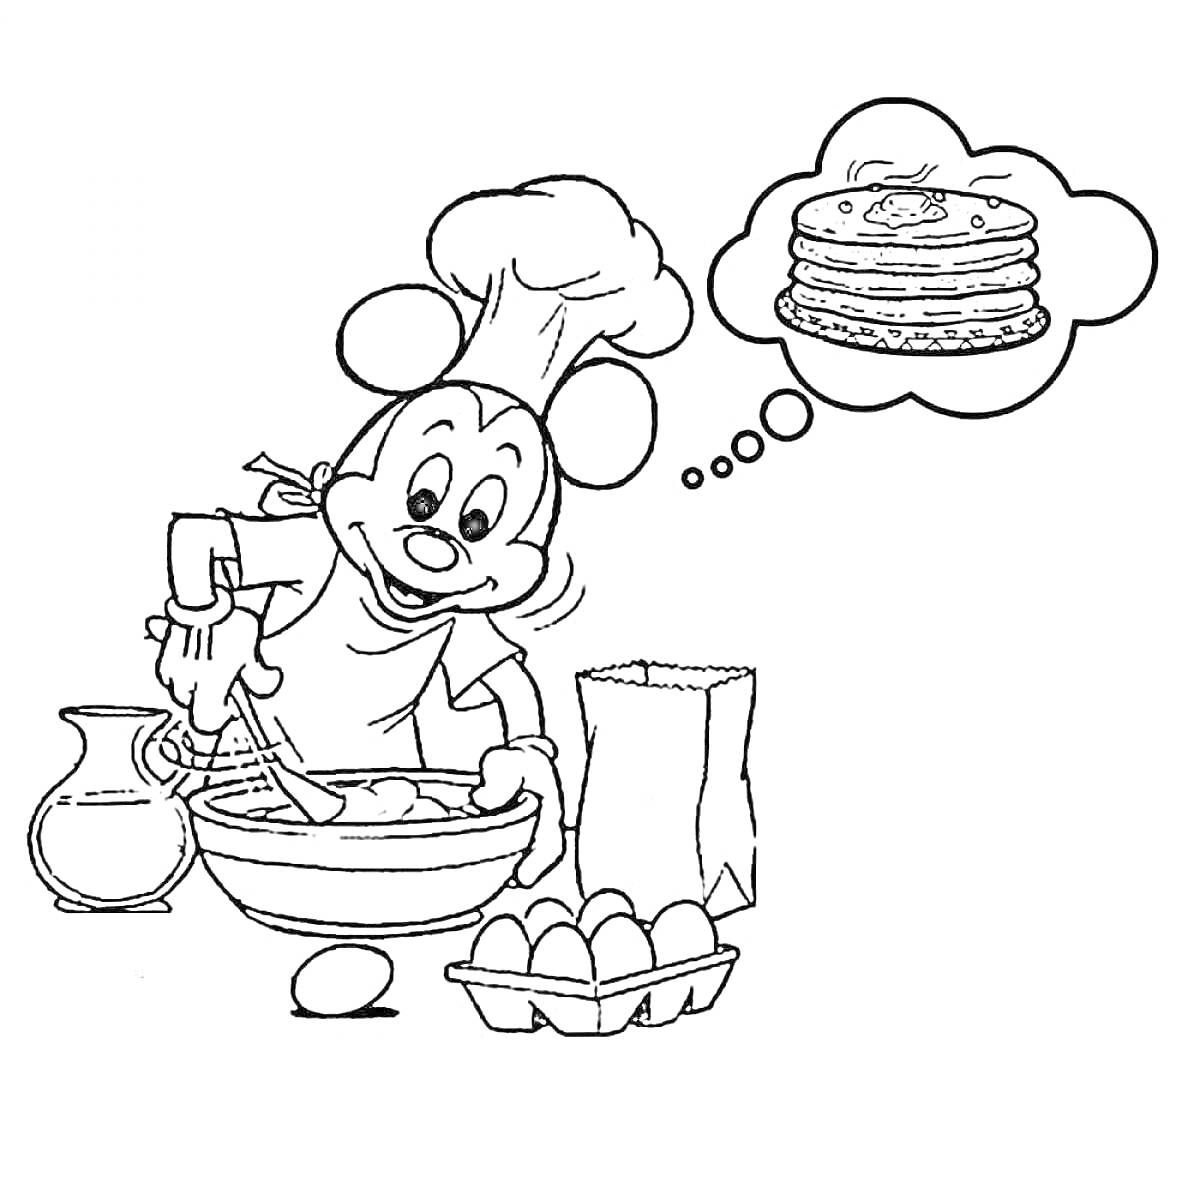 Раскраска Мышонок-поварик готовит блины к Масленице: венчик, миска, кувшин, пакет муки, яйца, мысленный образ стопки блинов